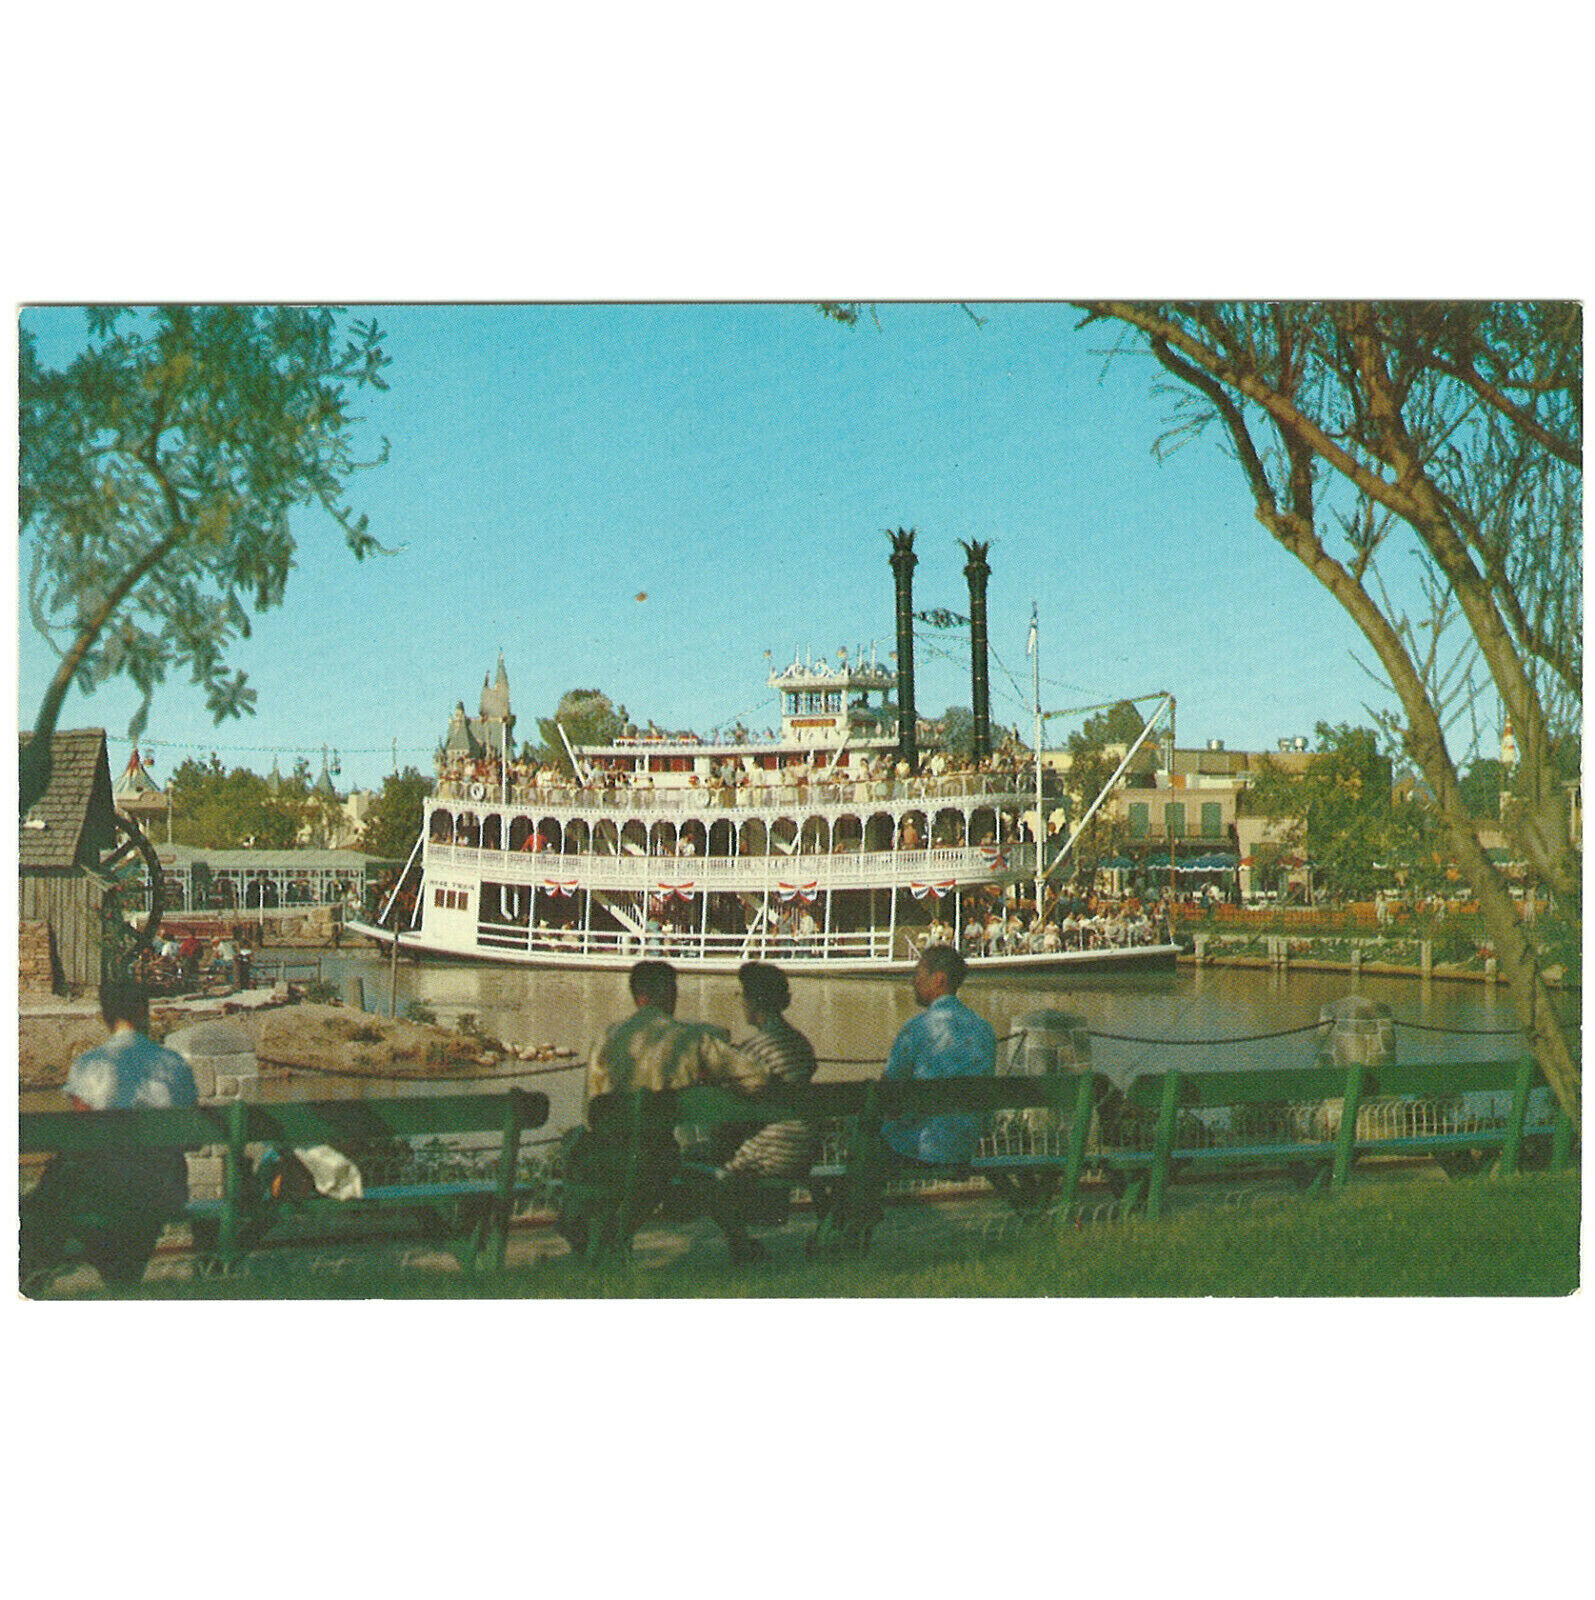 Disneyland Vintage Unused Postcard Mark Twain Steamboat Circa 1960s Card C2